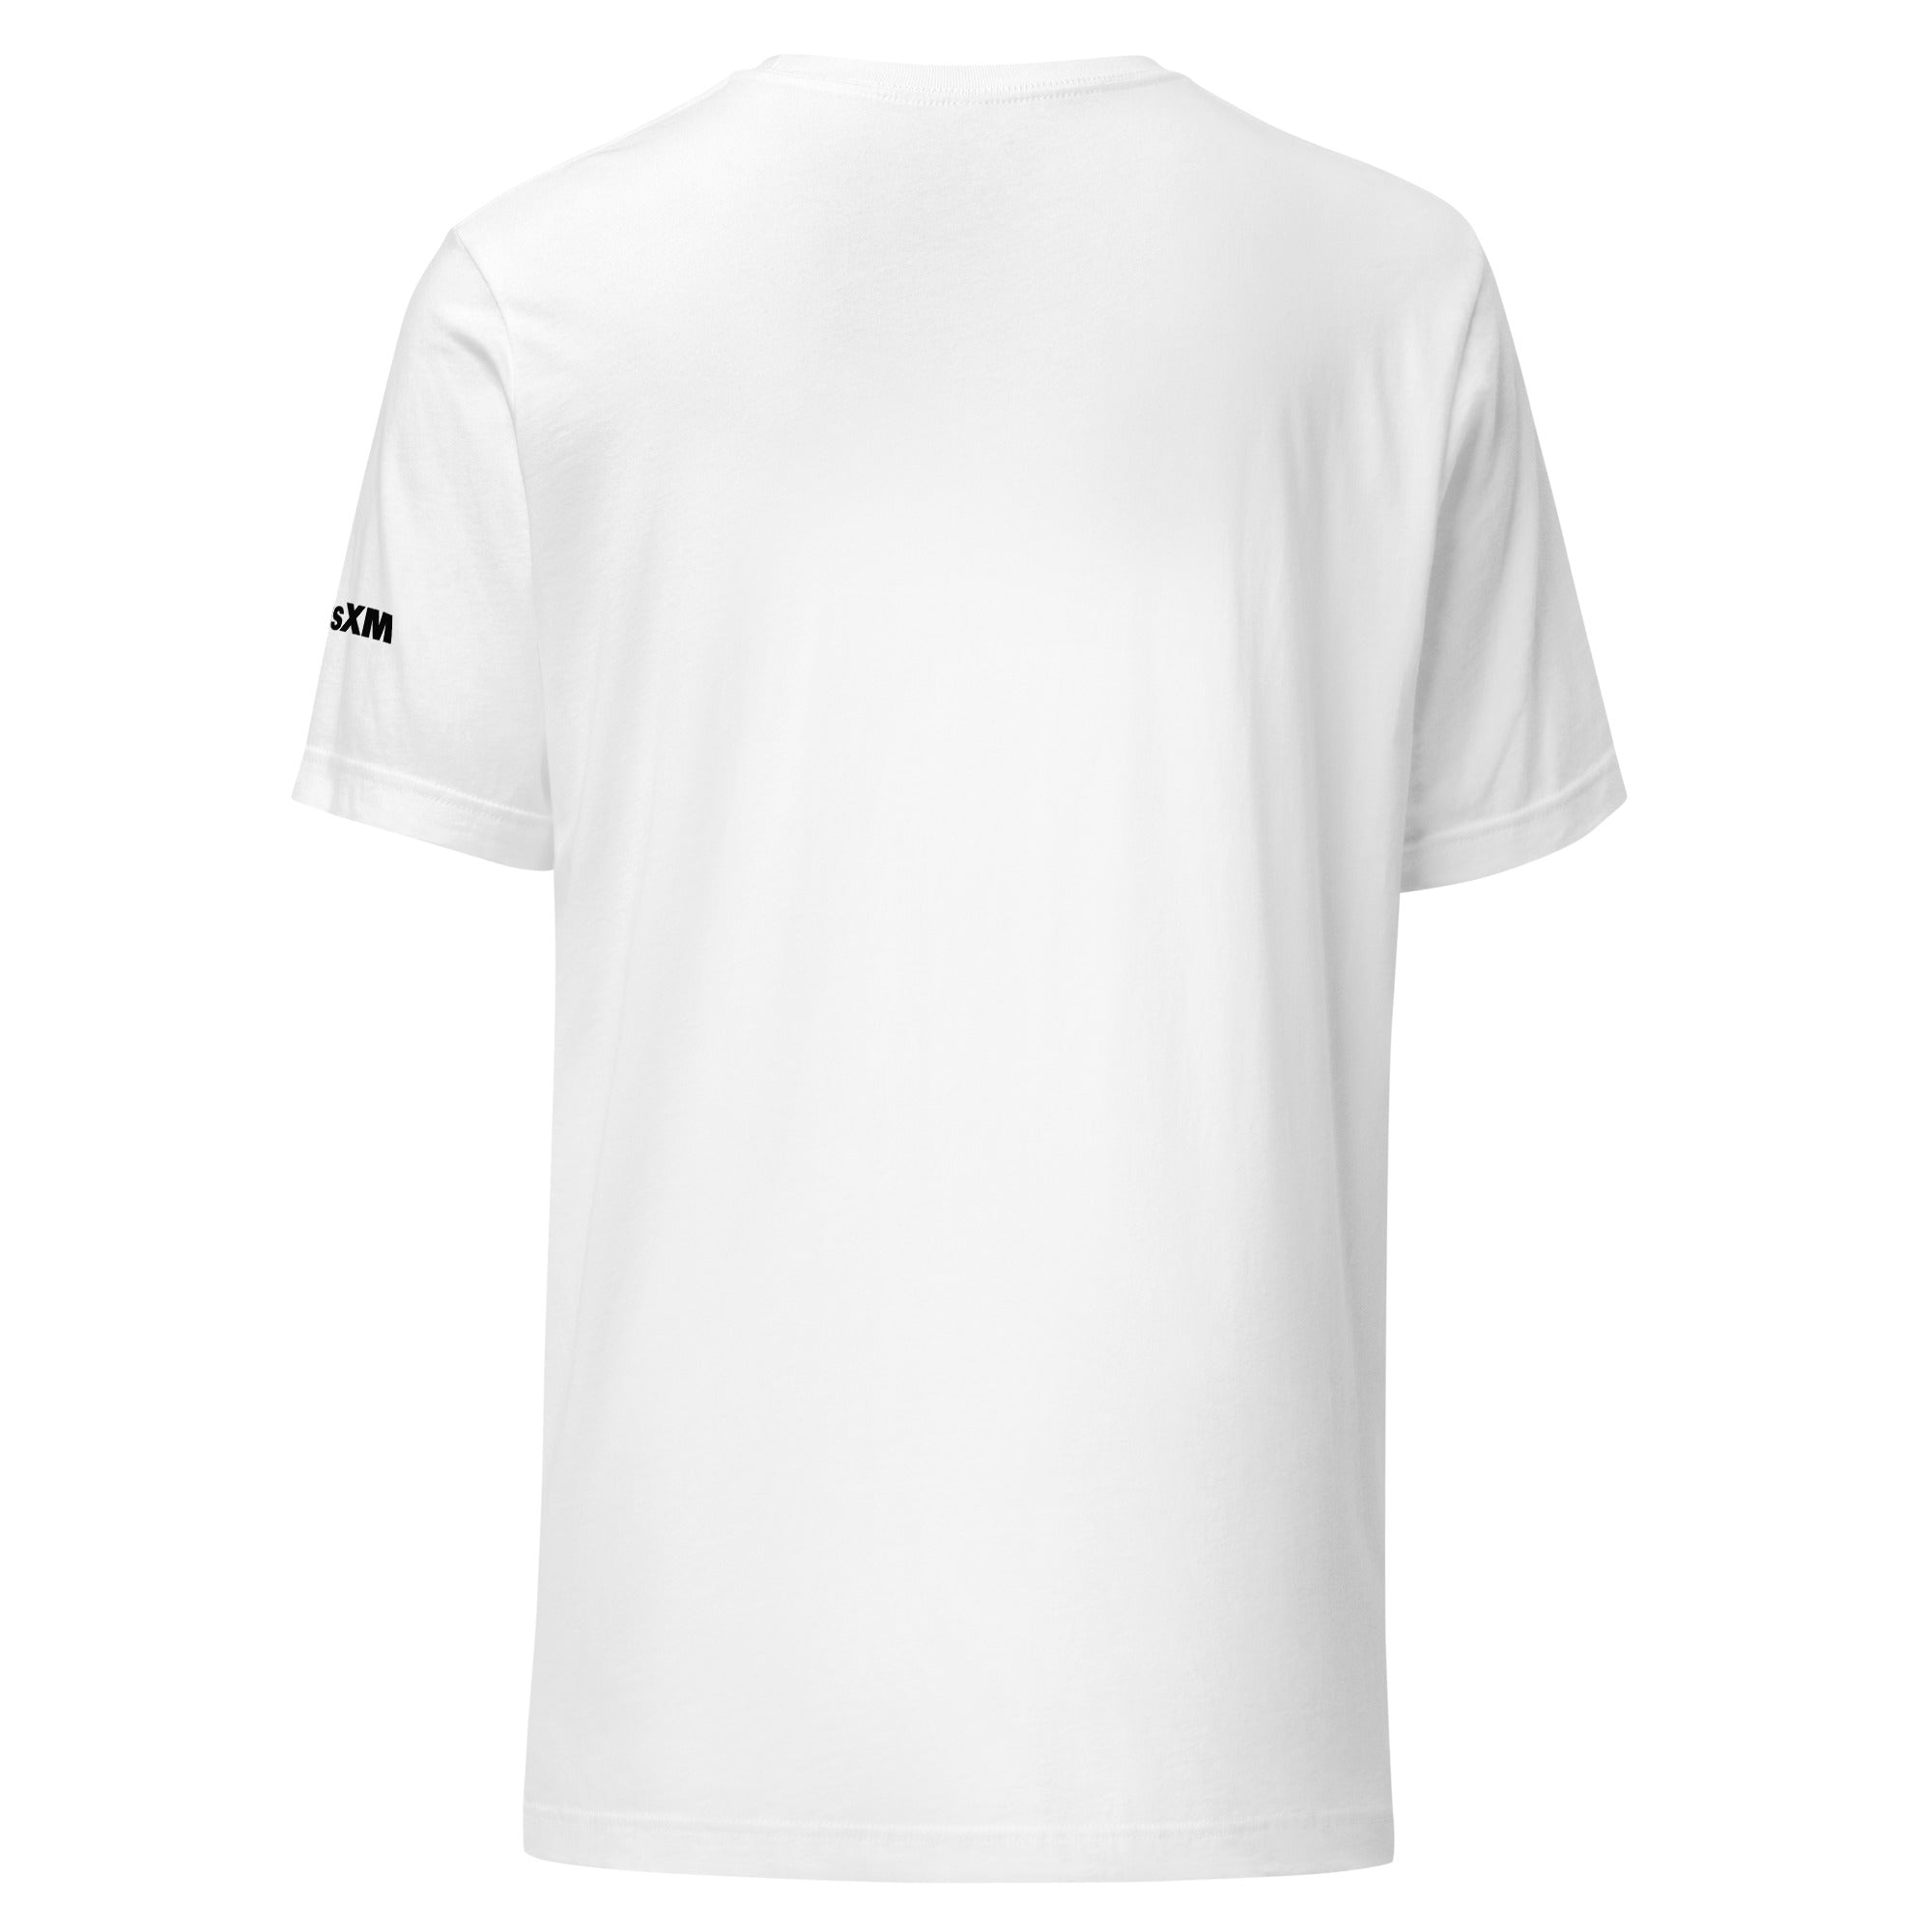 SiriusXMU: T-shirt (White)